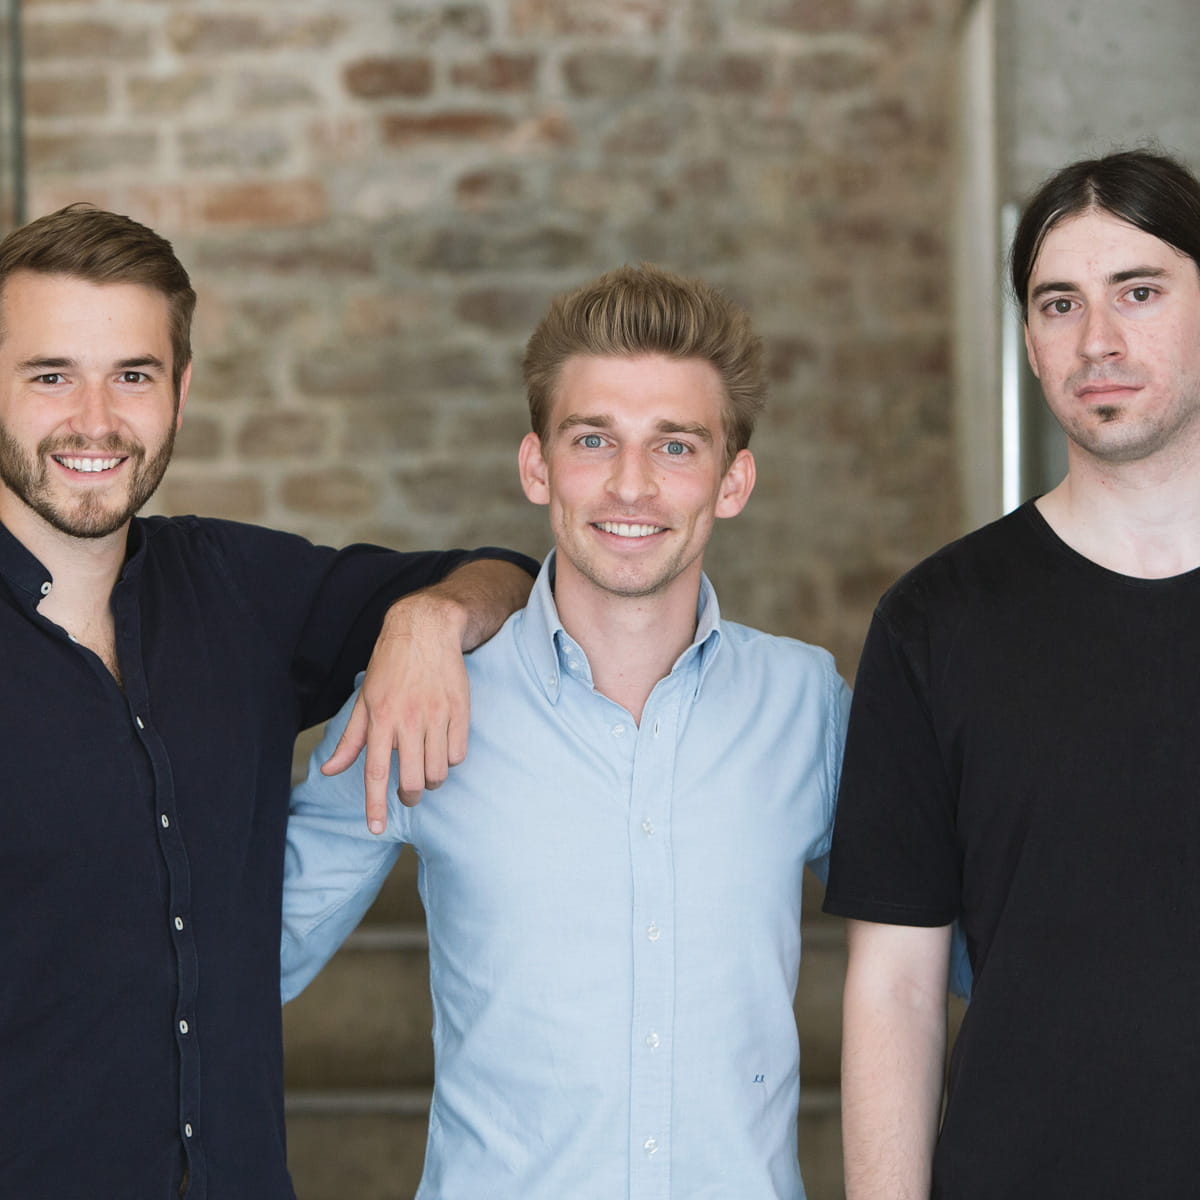 Halbnahe Aufnahme der drei Gründer des Start-ups Refurbed, welches einen nachhaltigen Online-Marktplatz für generalüberholte Elektrogeräte betreibt.